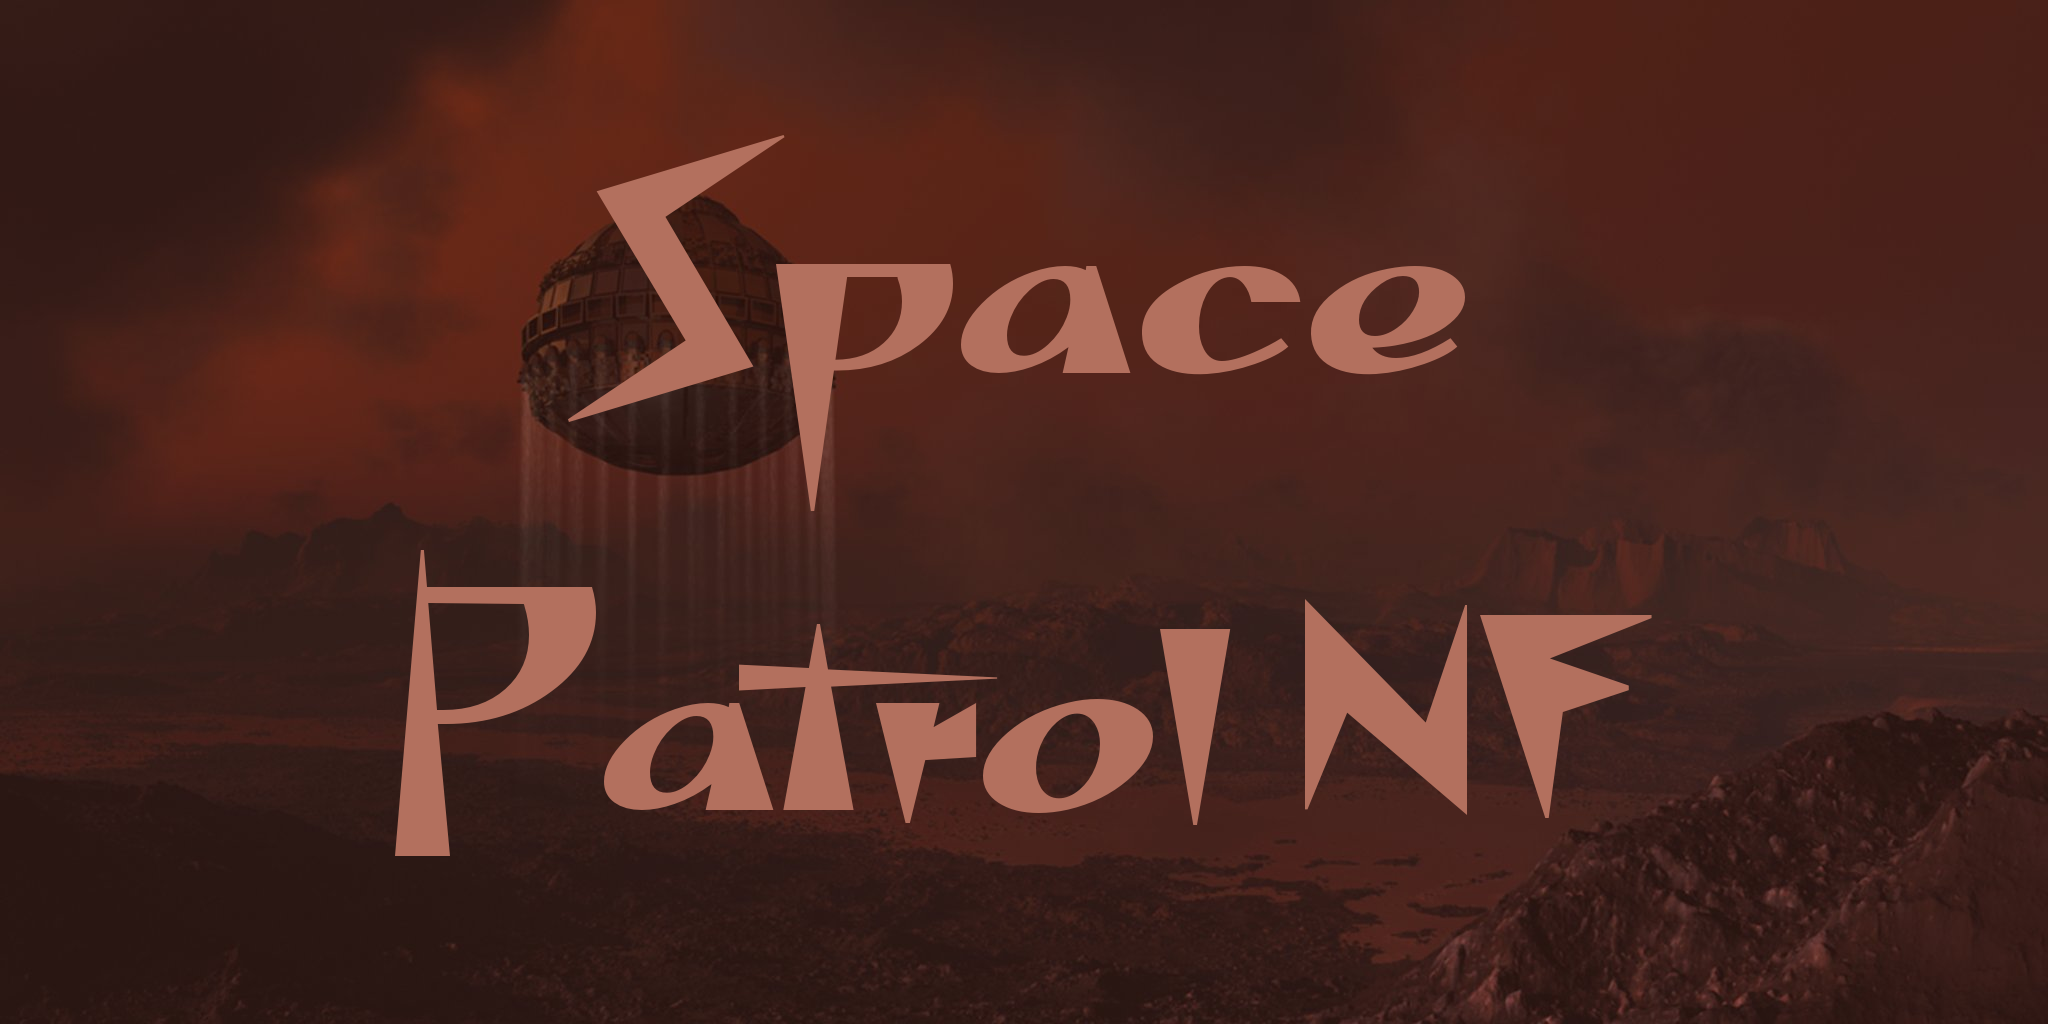 Space Patrol Nf